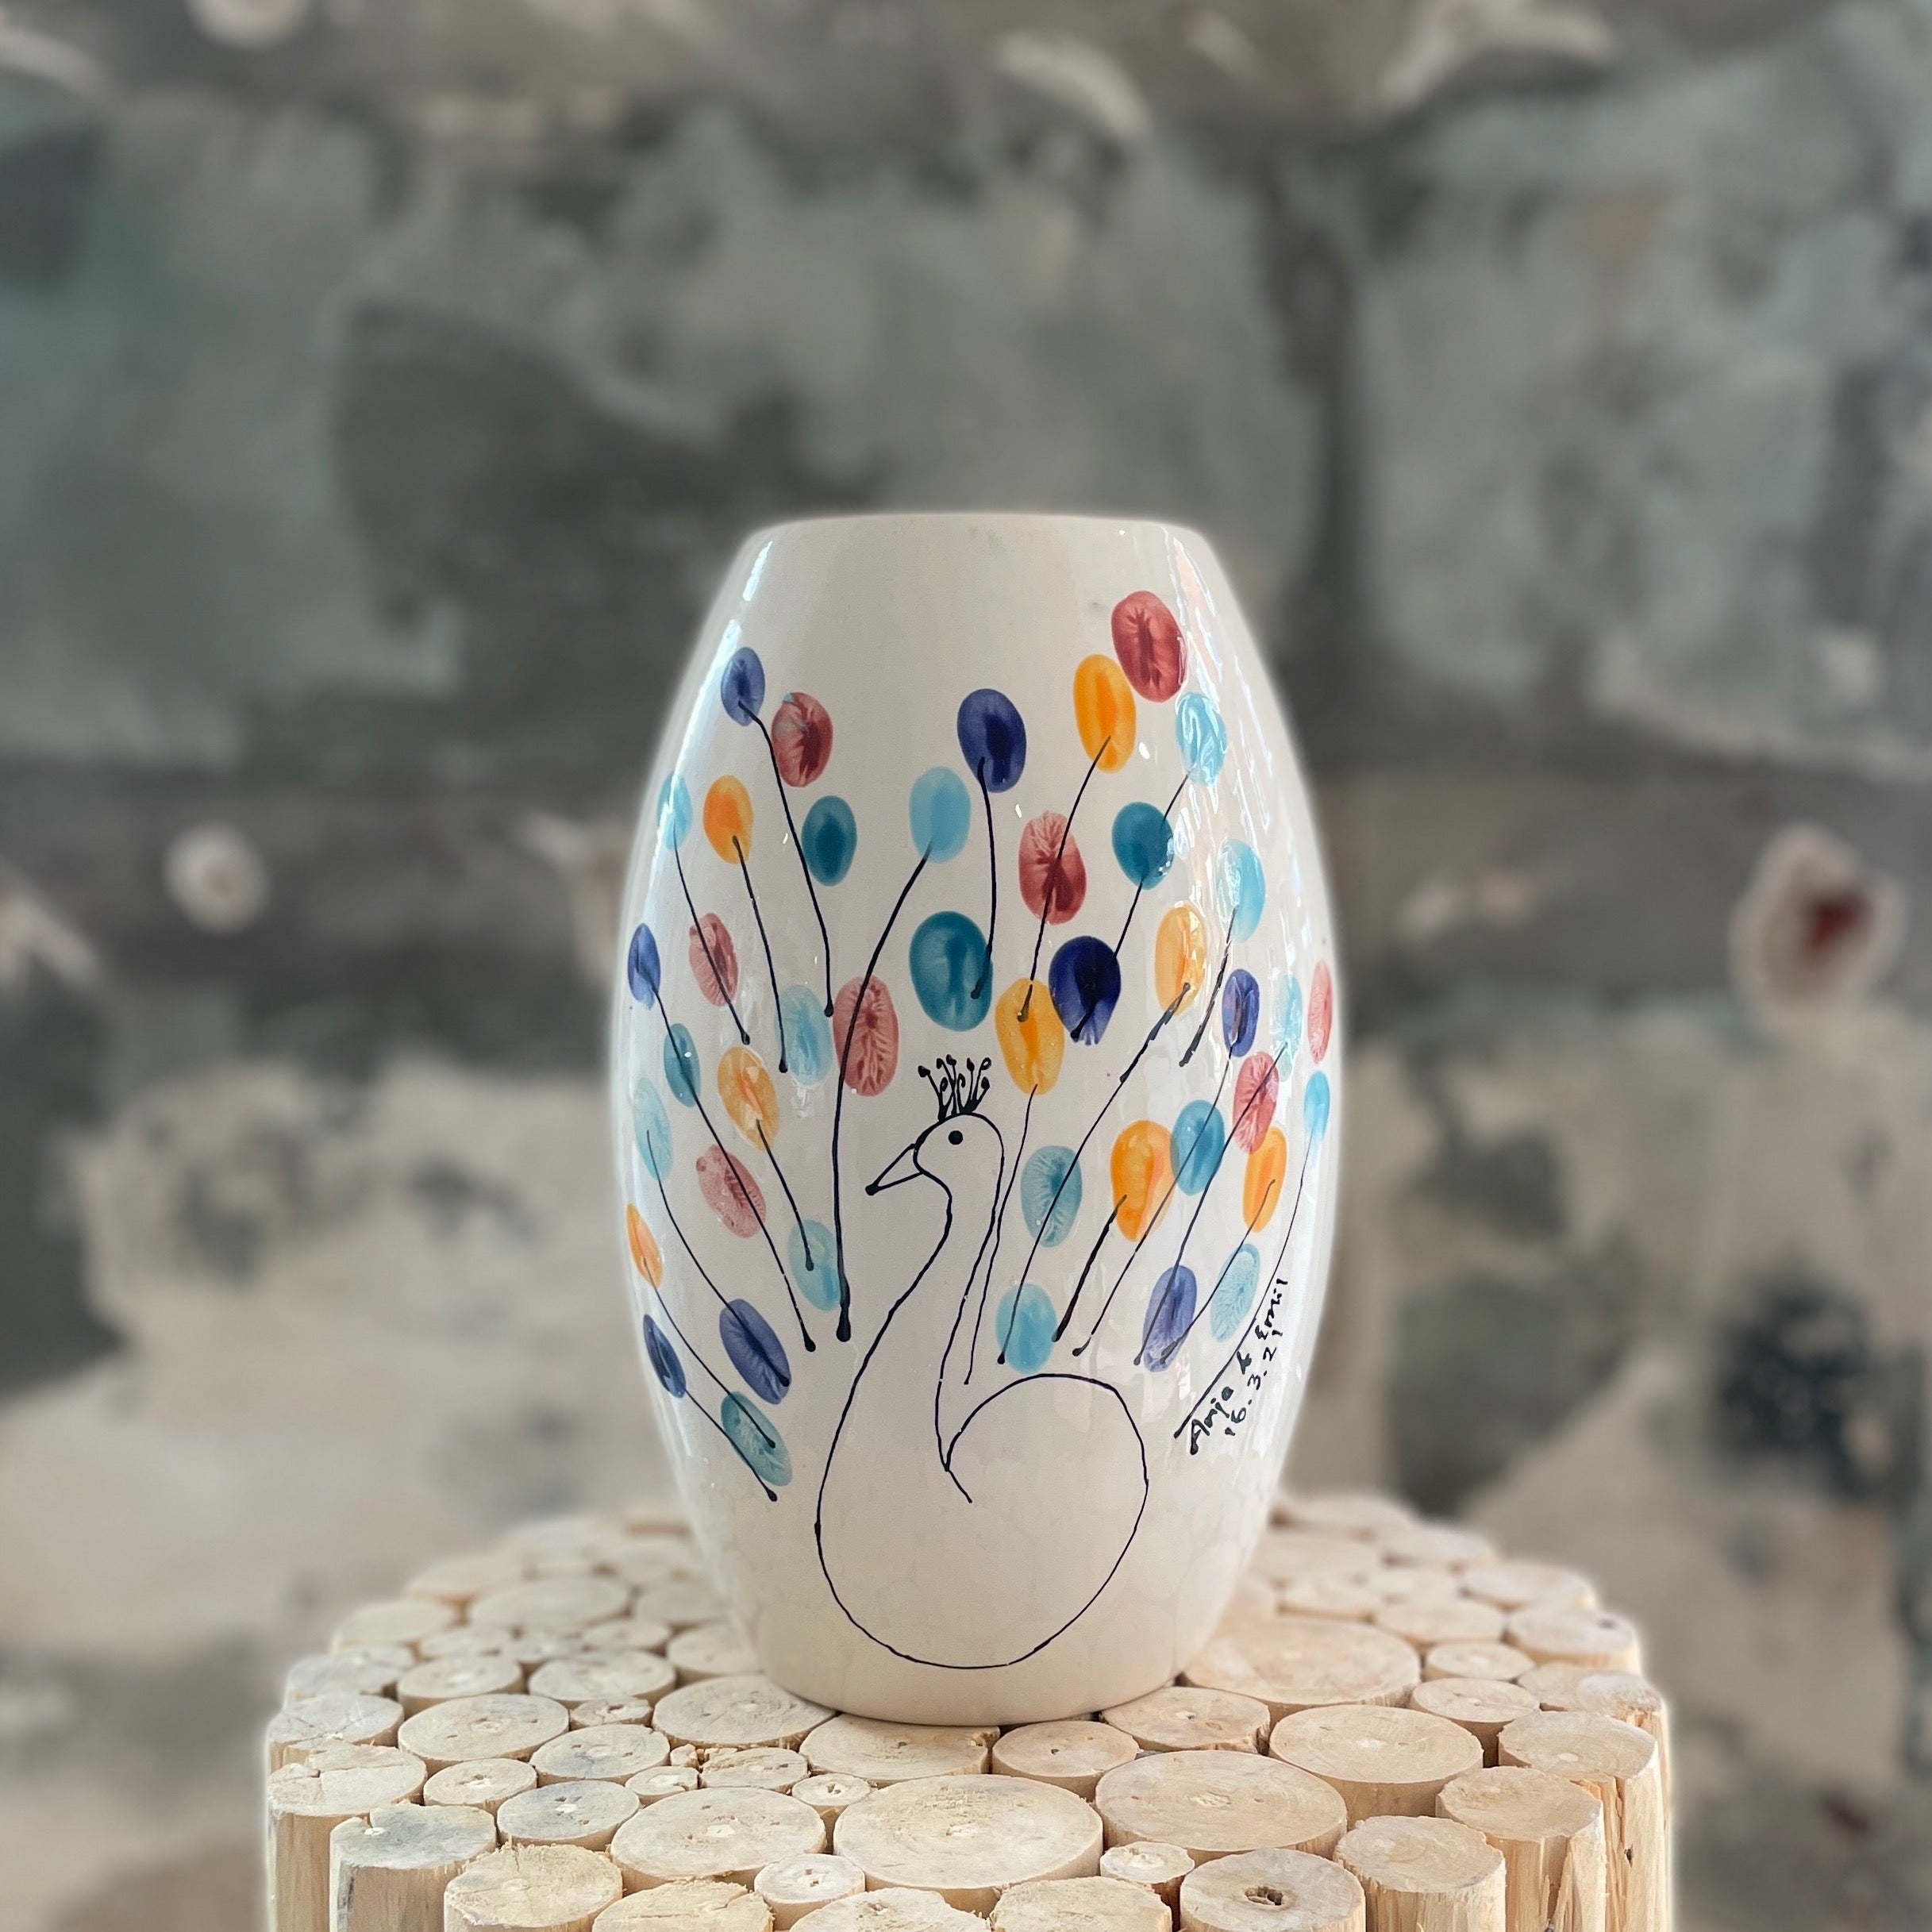 Keramik vase med fingertryks optegning af svane eller påfugl perfekt til alle anledninger